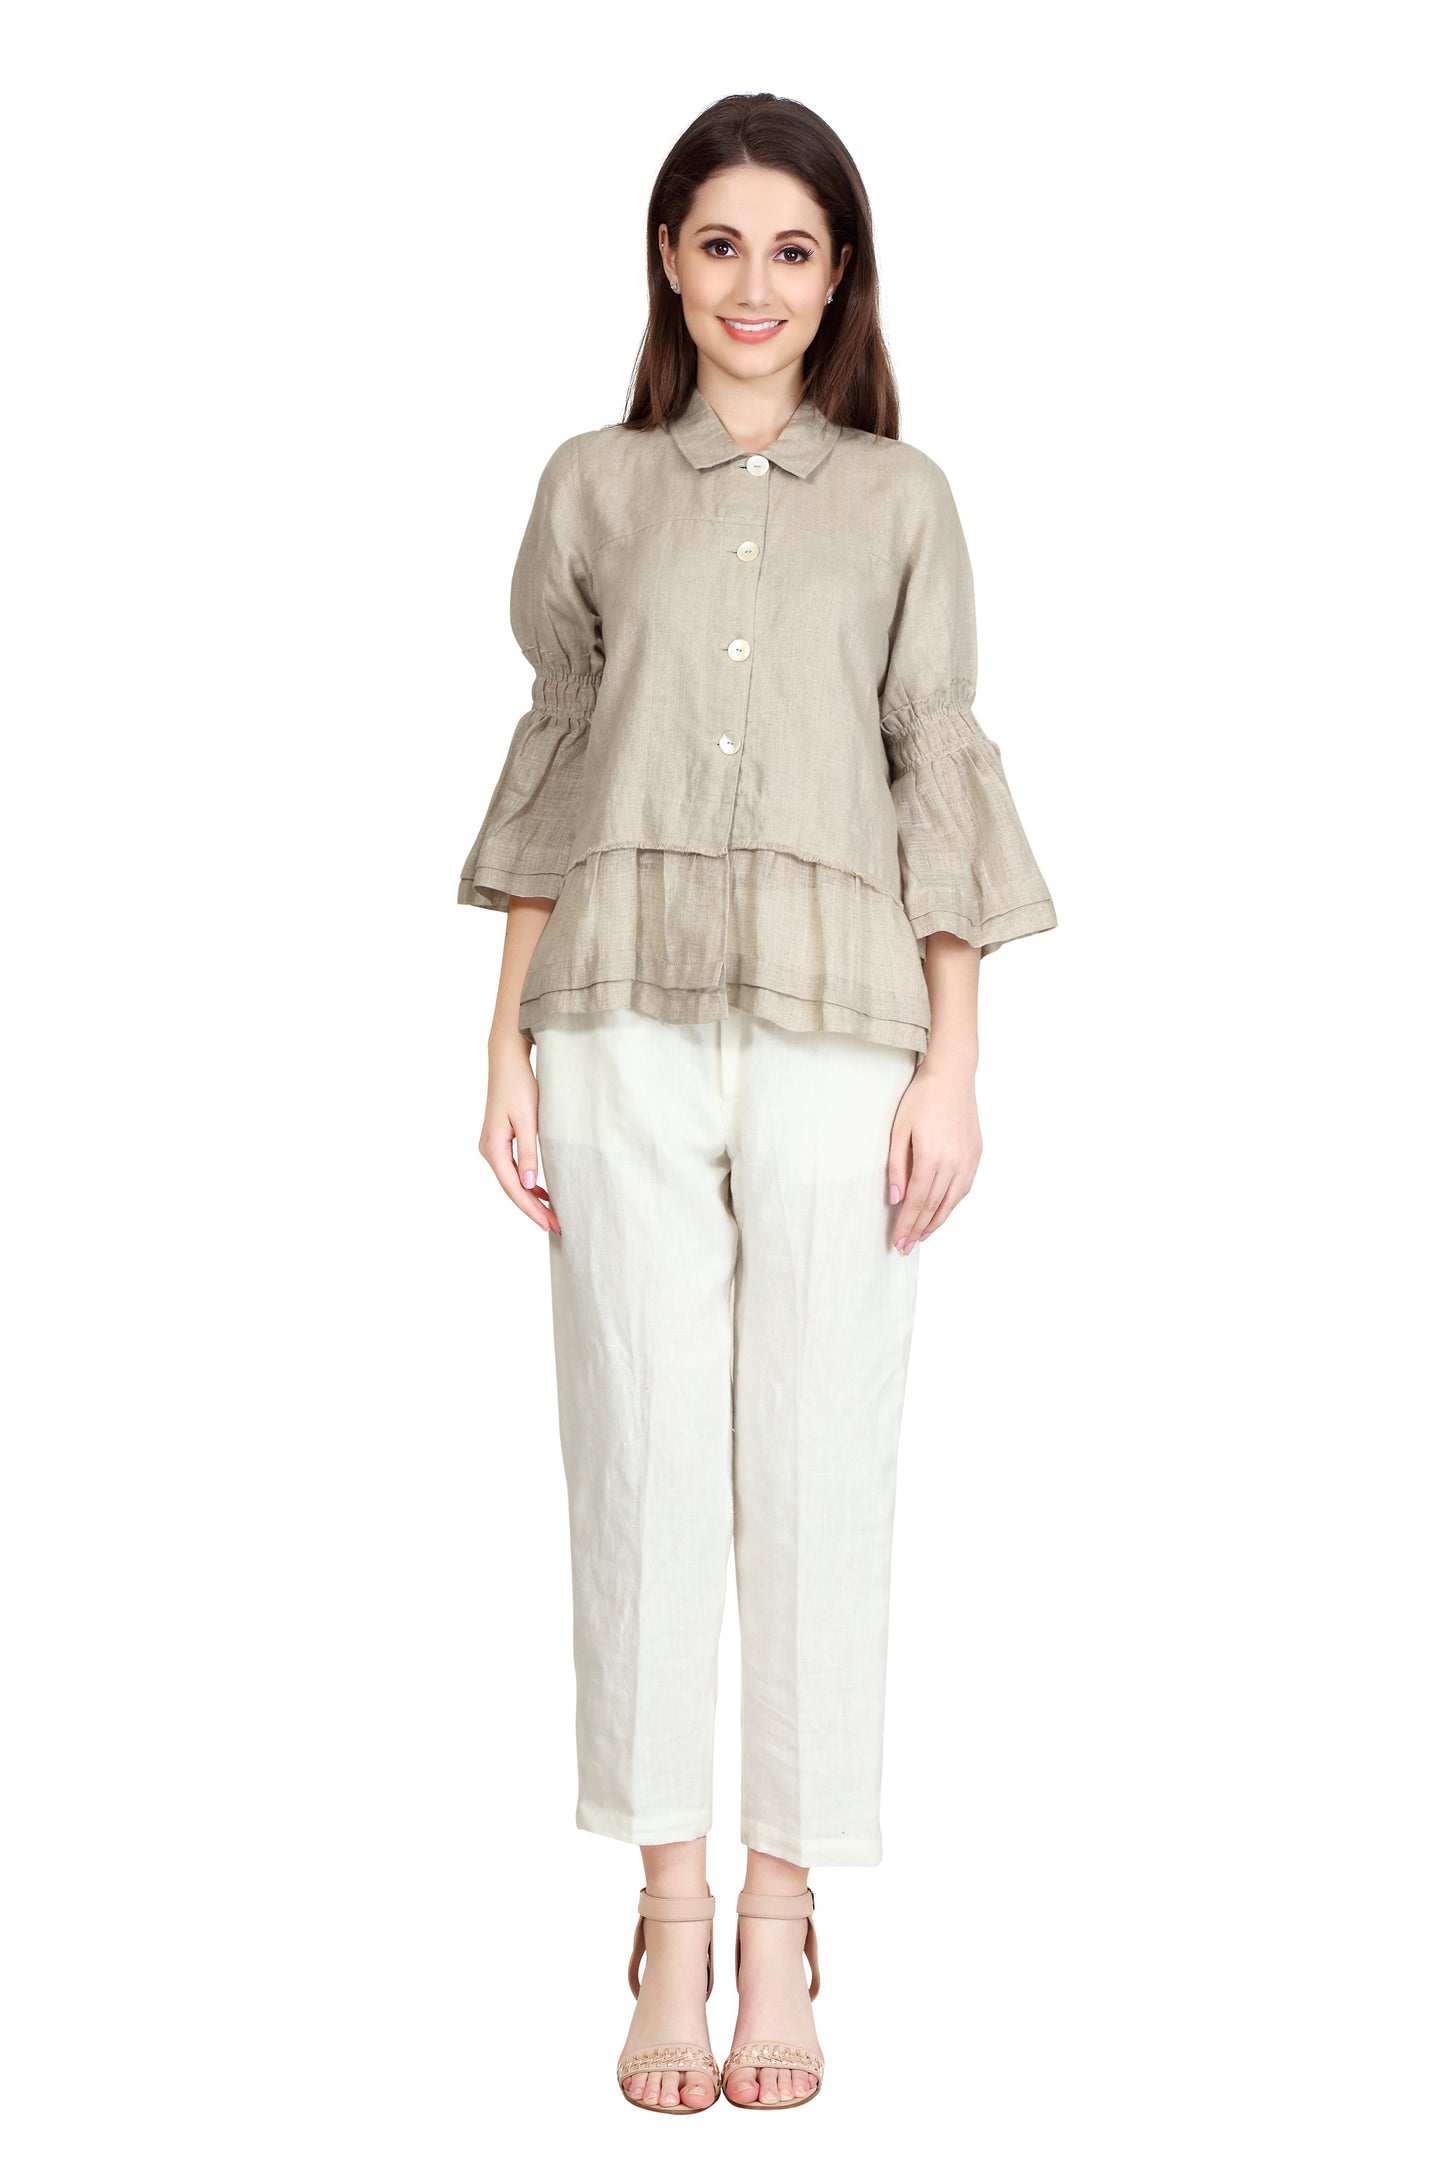 Linen and Linens - Ruffled Linen Shirt - Natural - 1